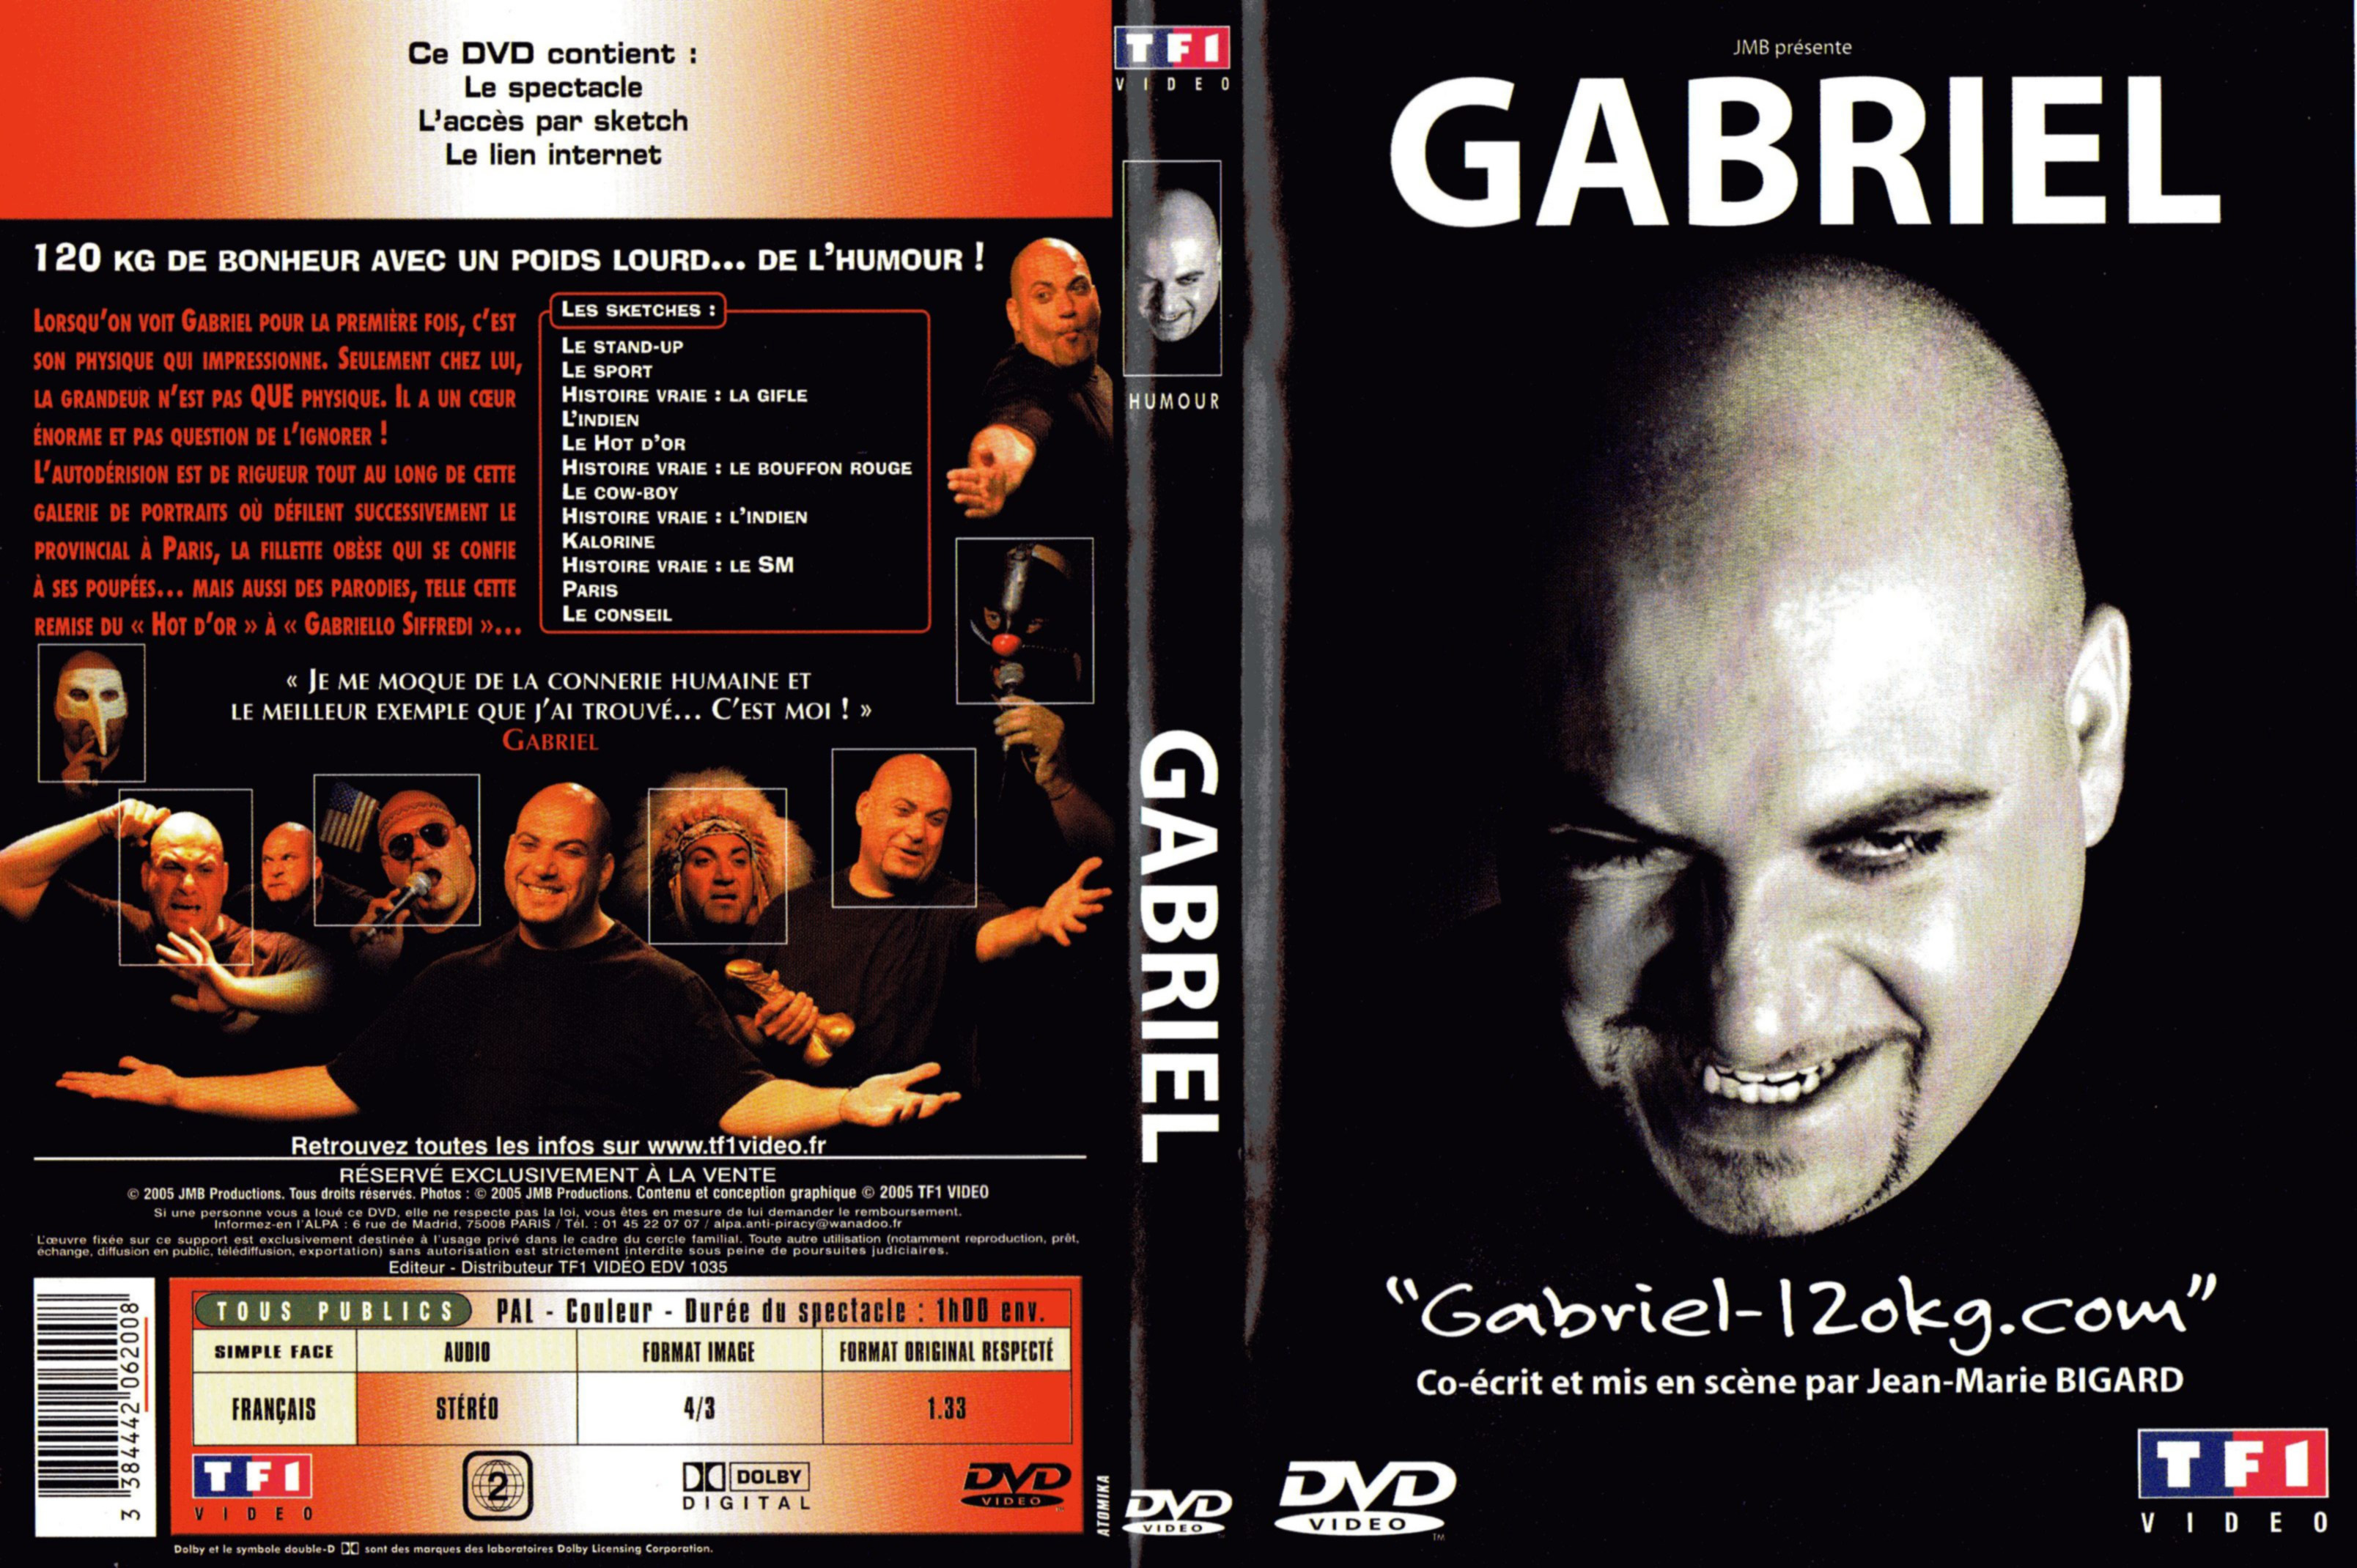 Jaquette DVD Gabriel 120 kg com